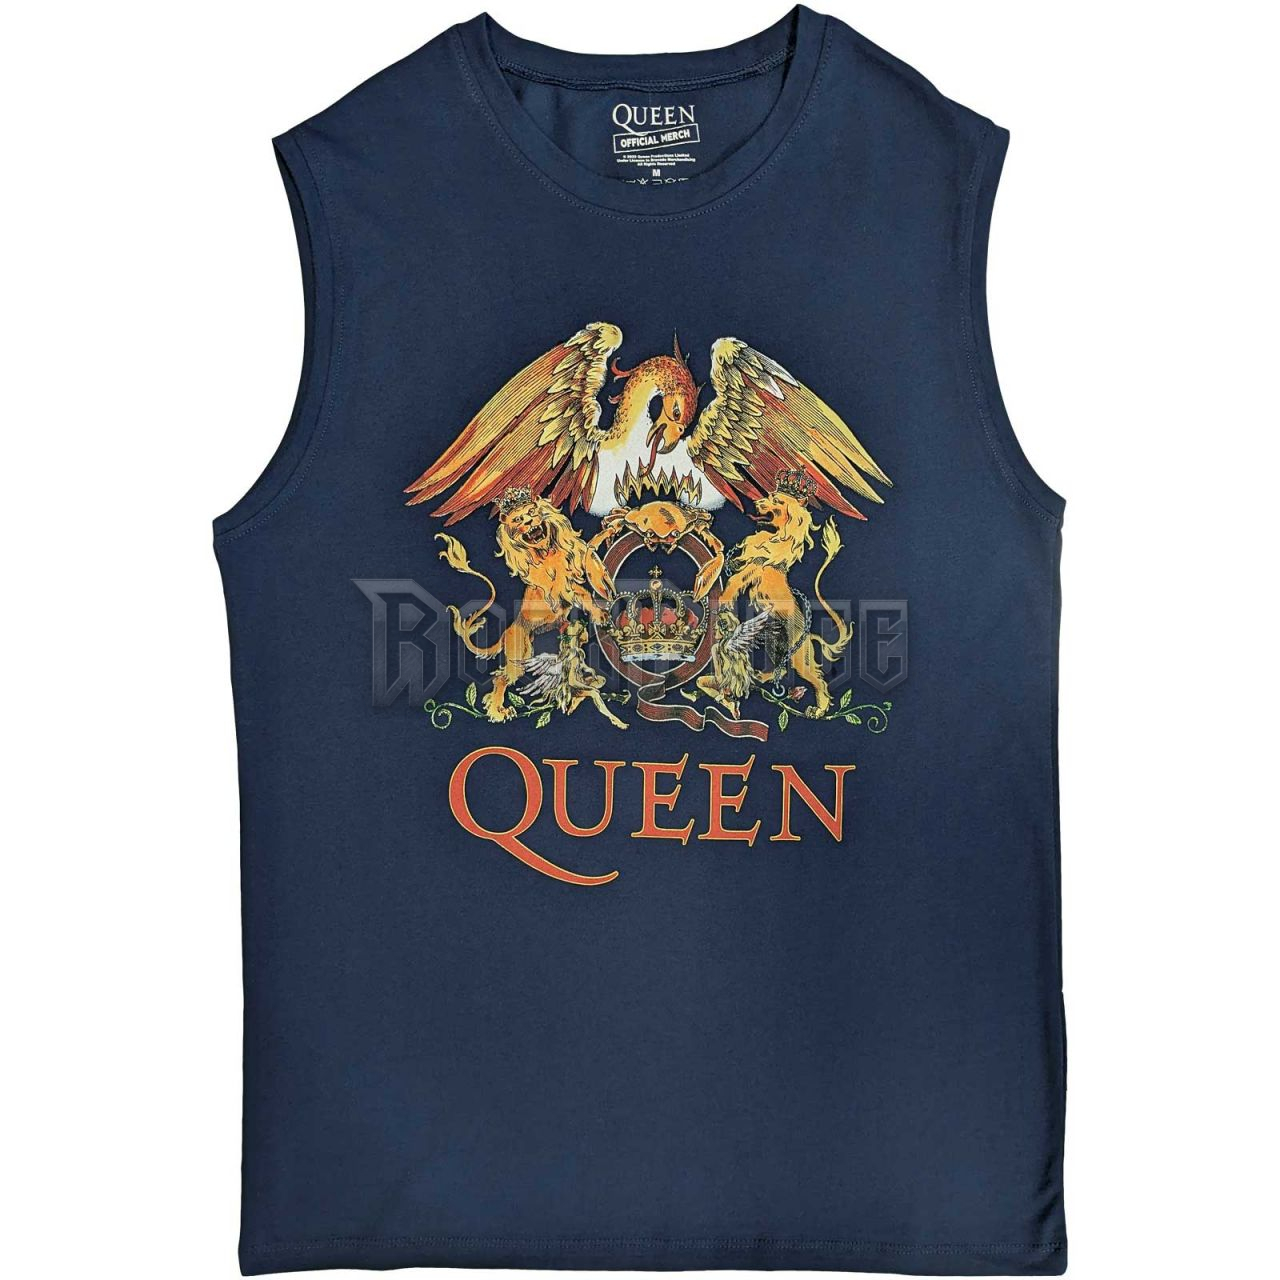 Queen - Classic Crest - unisex trikó - QUTANK03MN